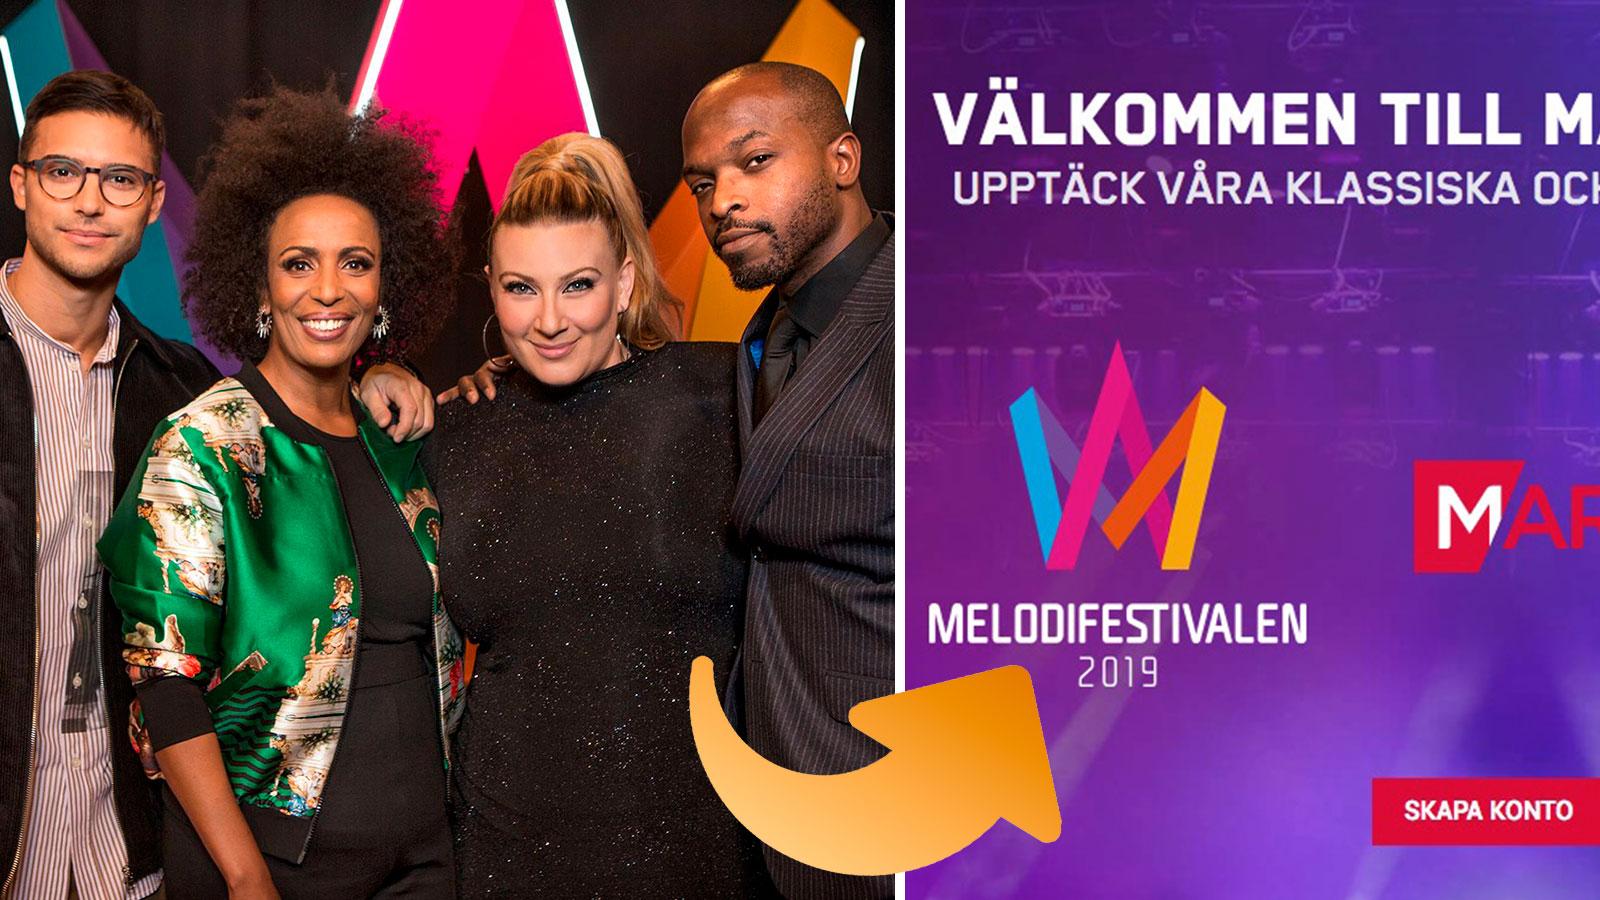 Årets upplaga av Melodifestivalen sponsras av ett spelbolag, som skyltar med festivalens logotype på sin startsida.